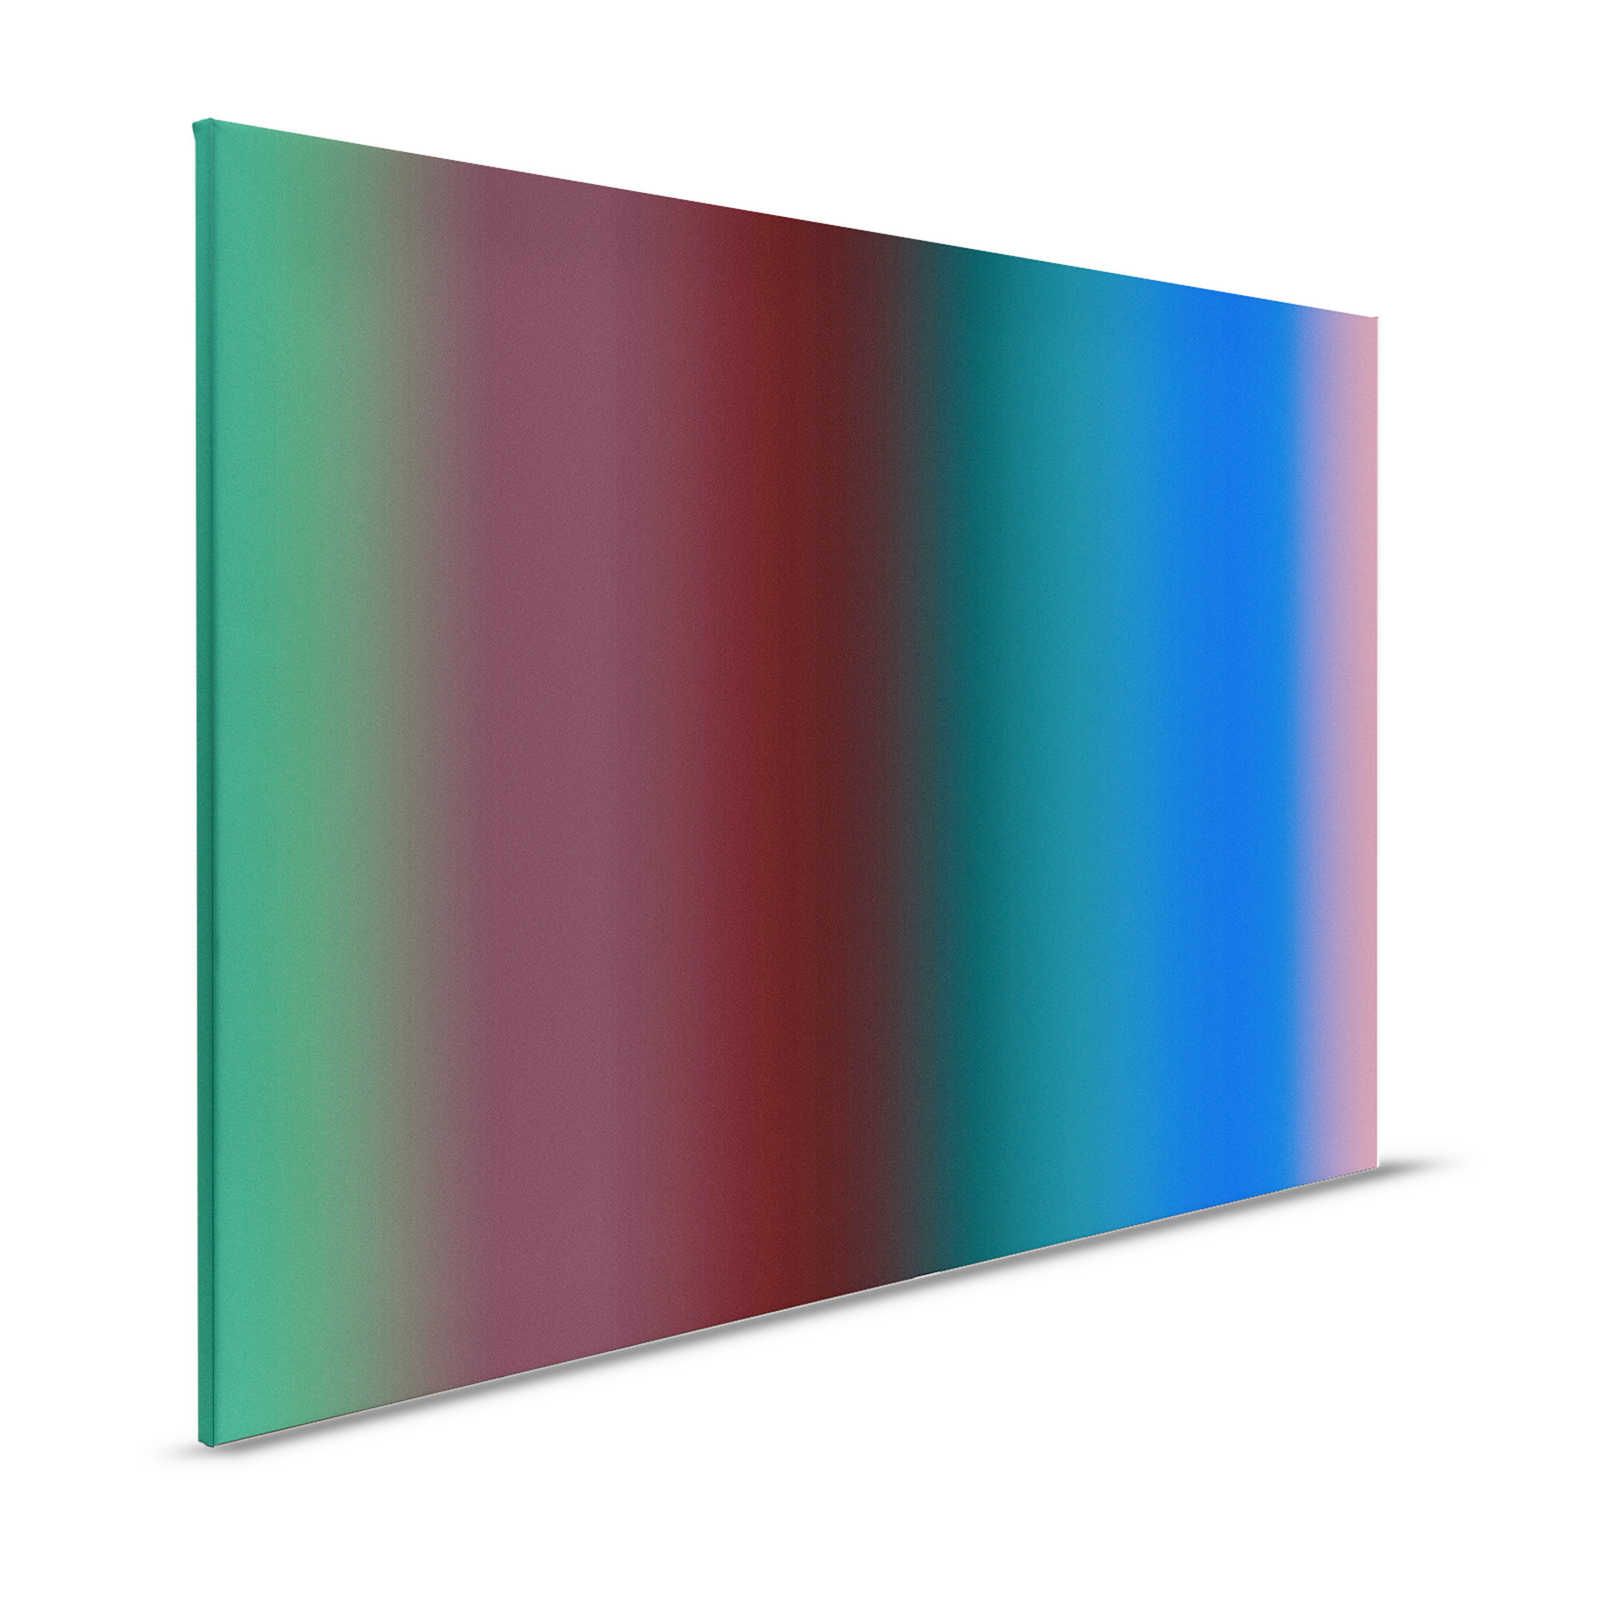 Over the Rainbow 2 - toile dégradé rayures colorées - 1,20 m x 0,80 m
